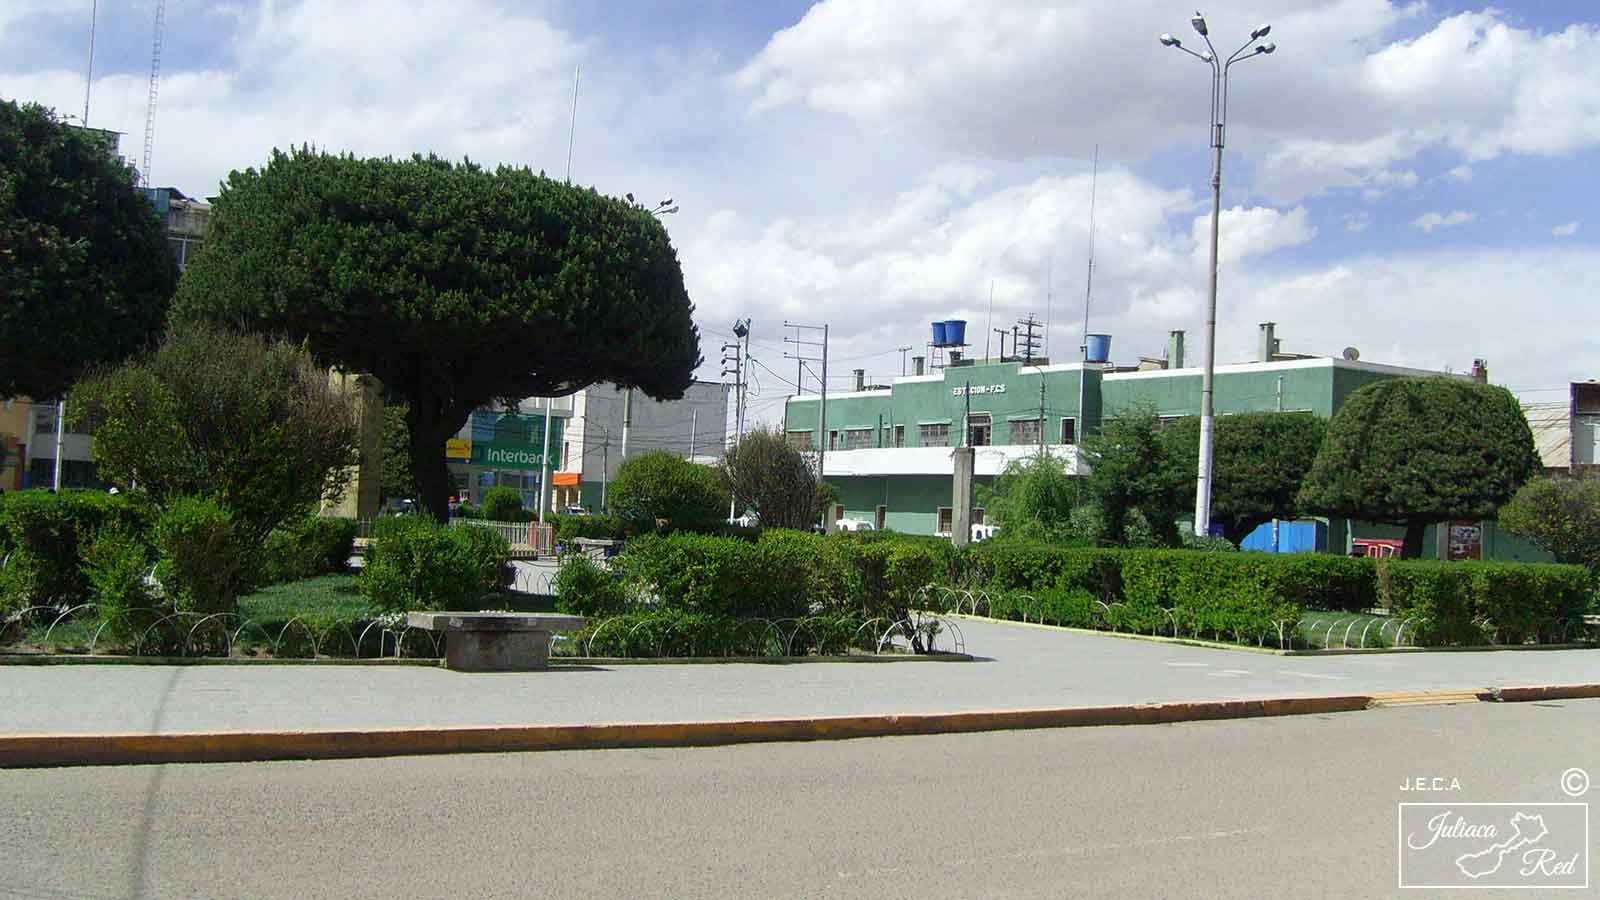 Estación central de trenes, Juliaca Perú